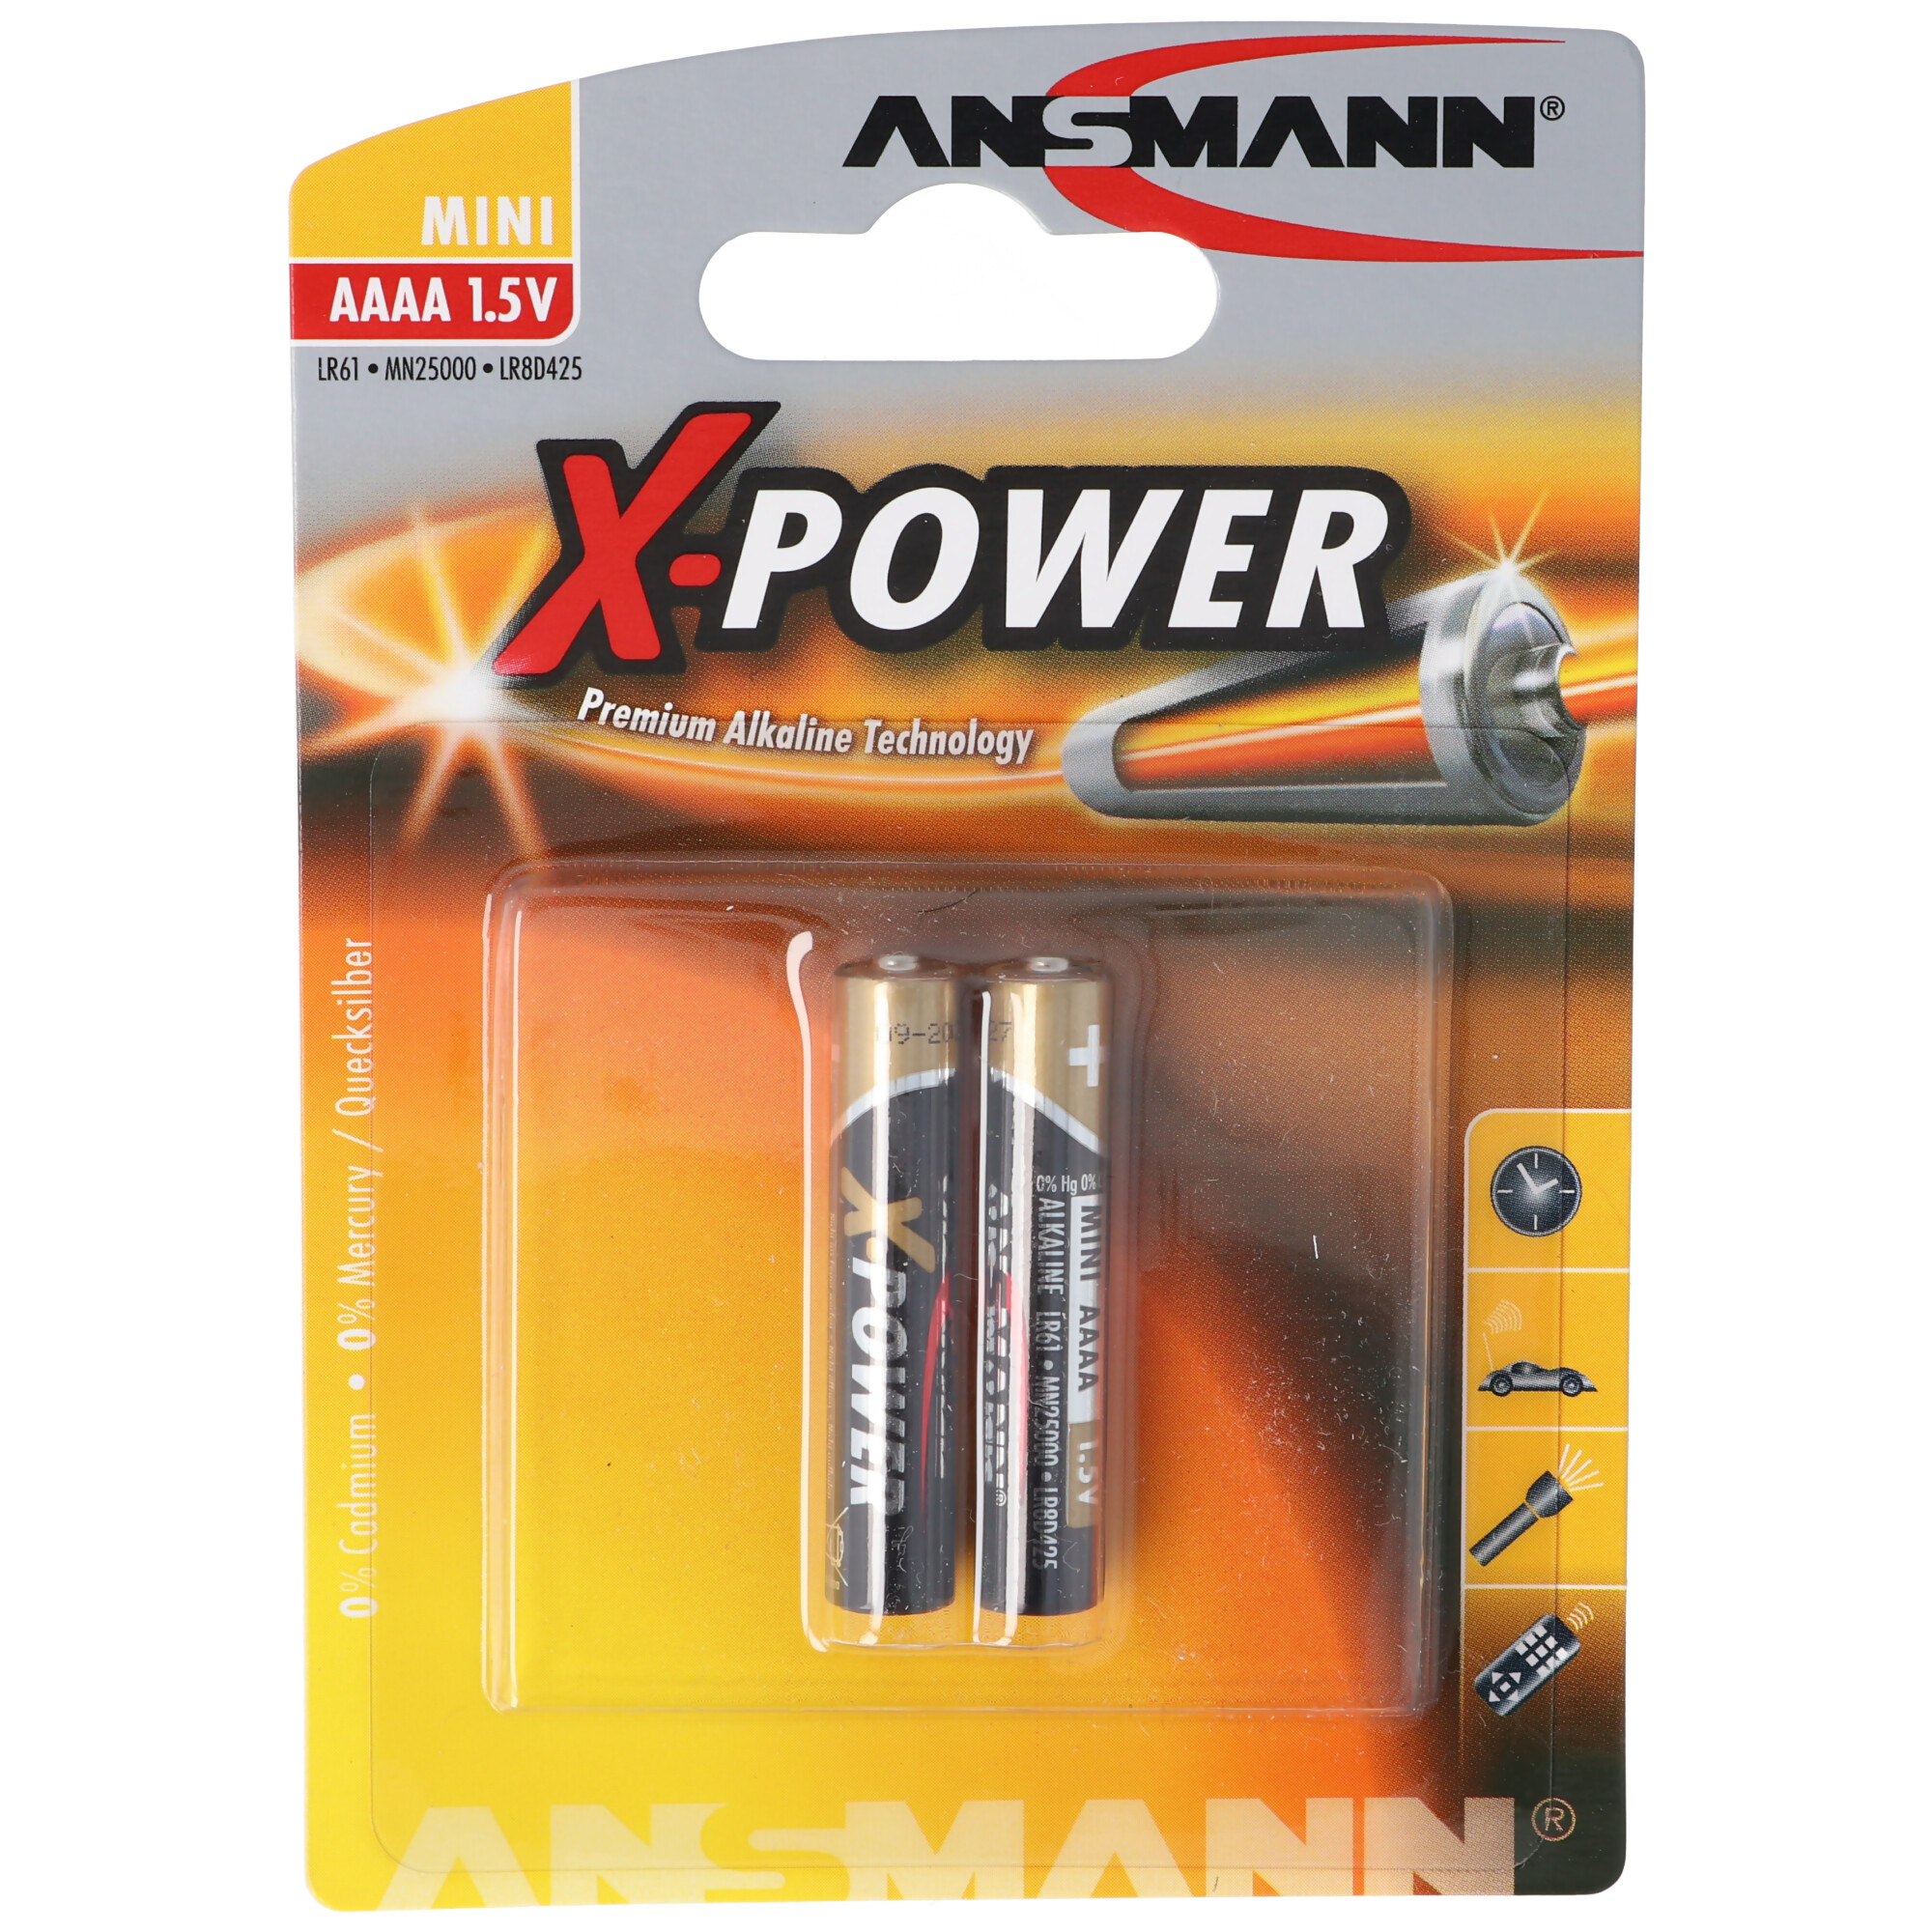 AAAA Alkaline Batterie LR61 AAAA 41,5 x 8,3mm im 2er Pack